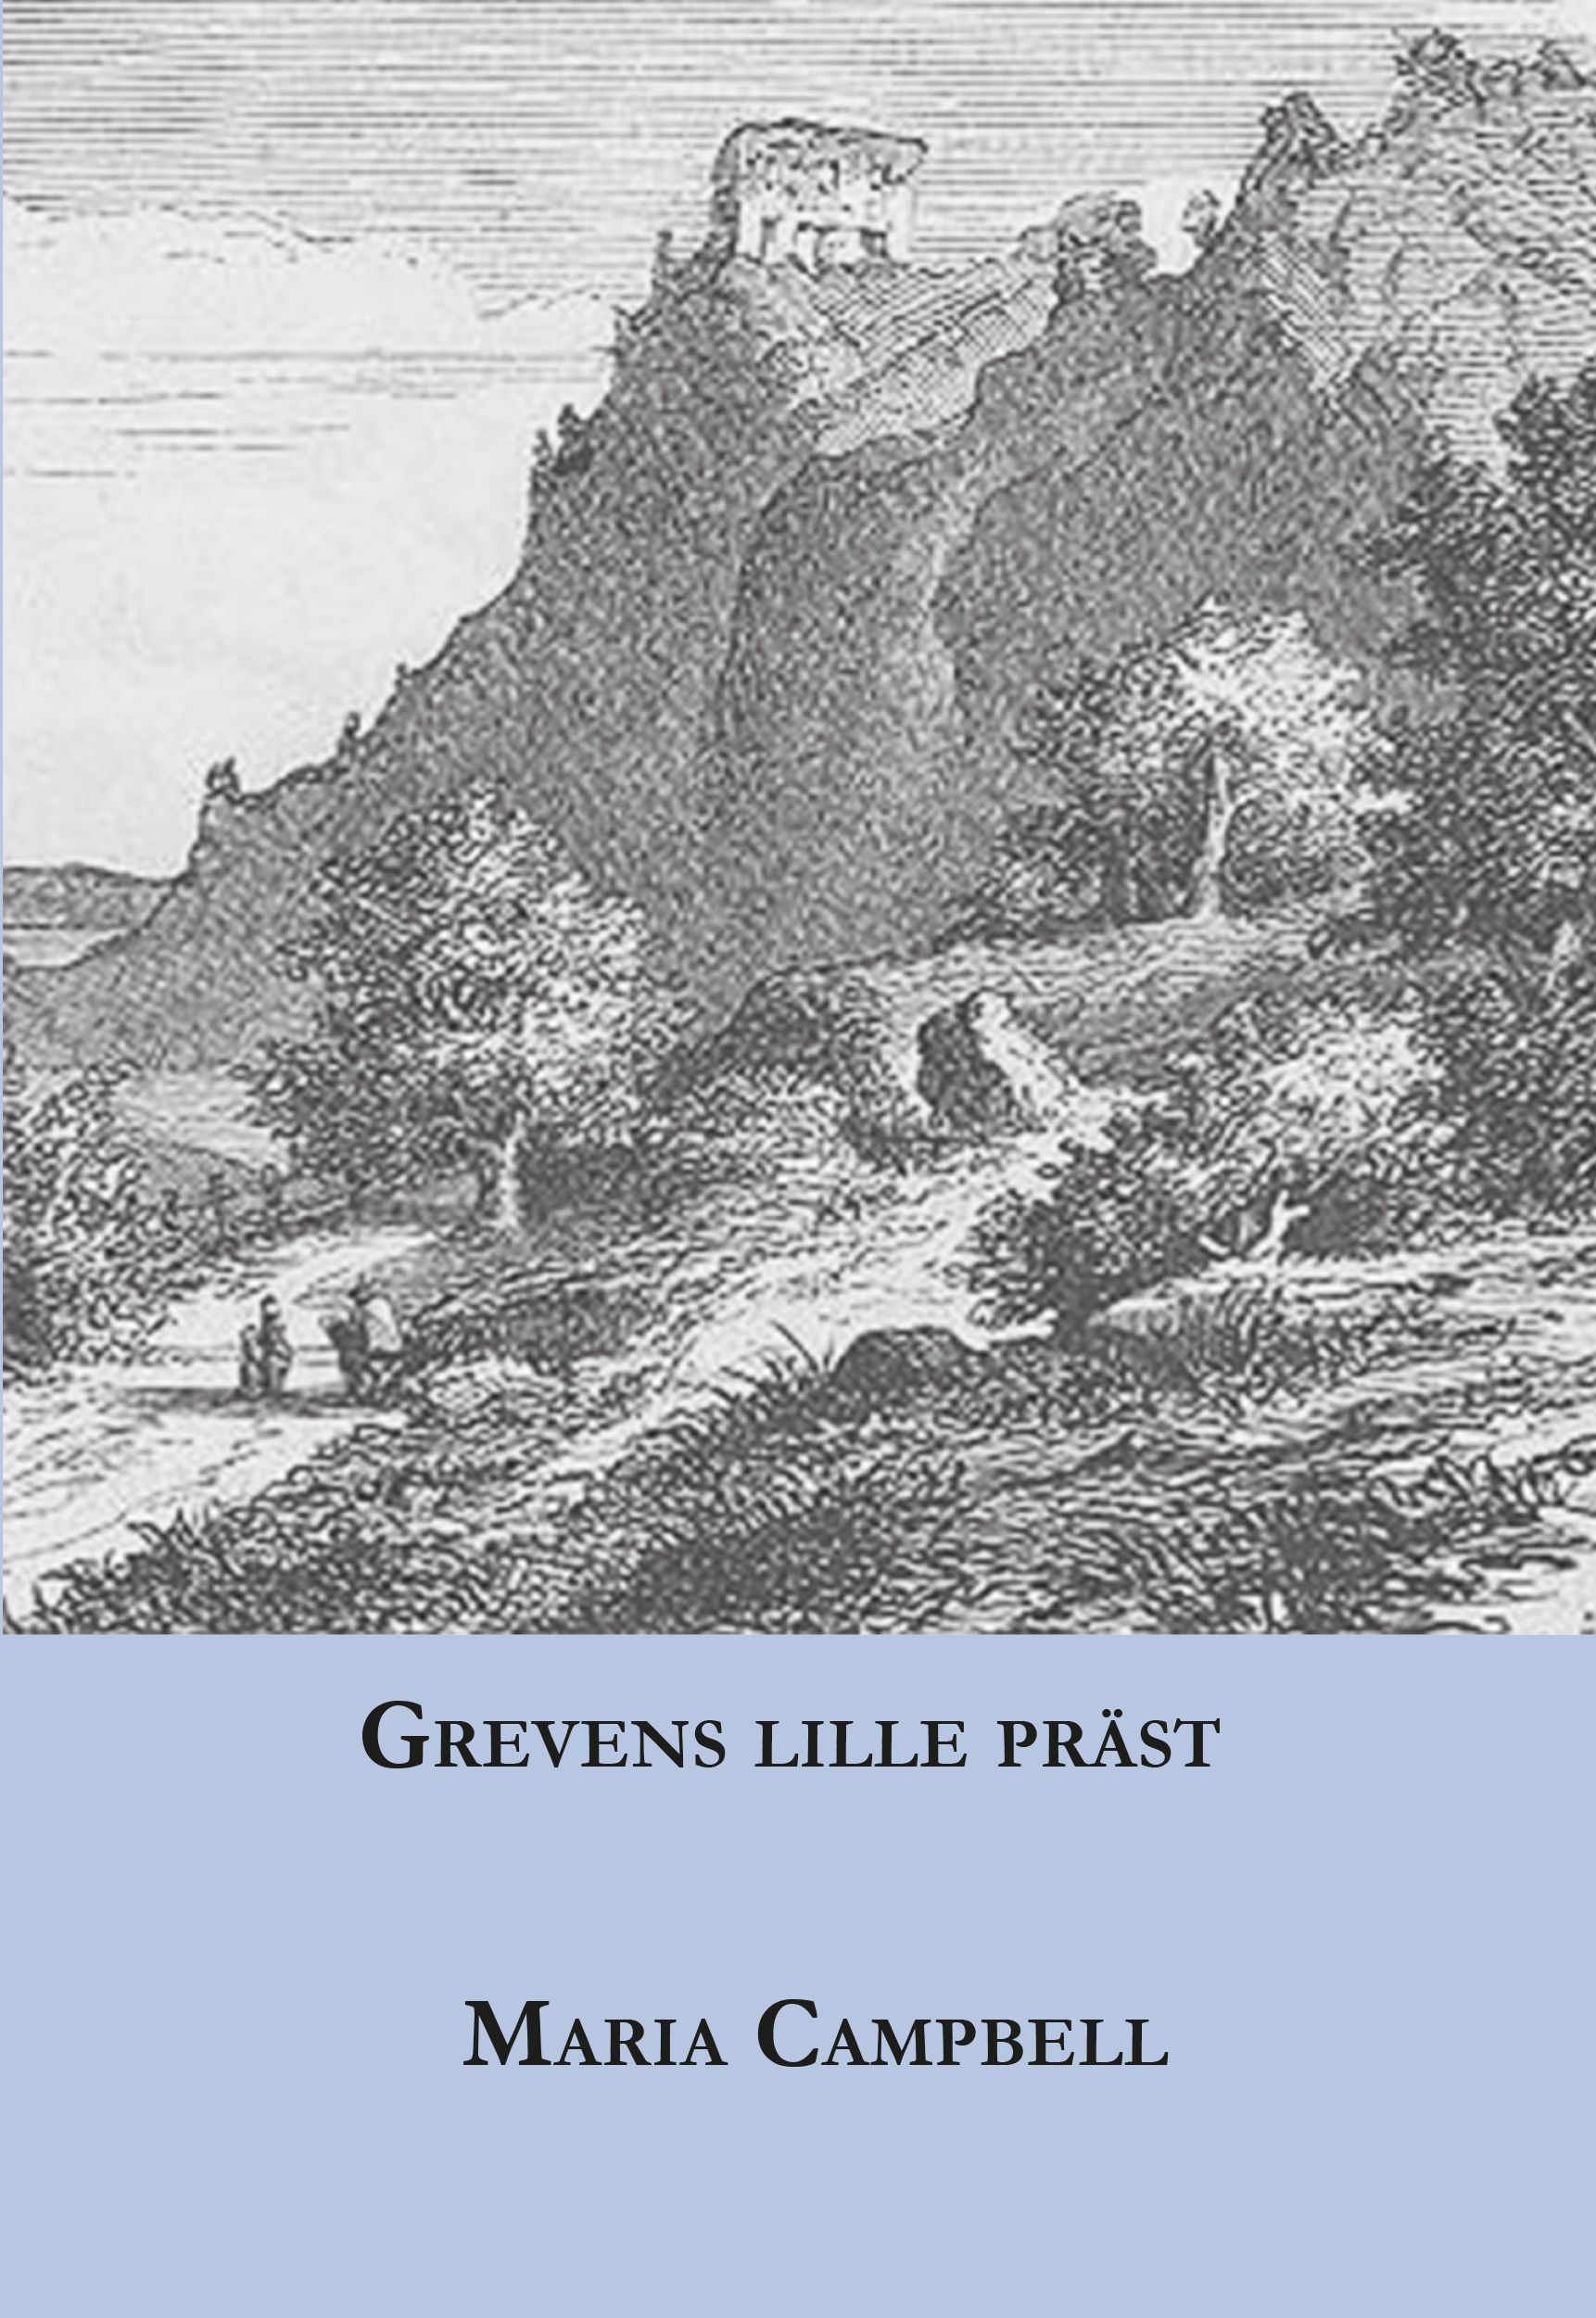 Grevens lille präst, e-bok av Maria Campbell